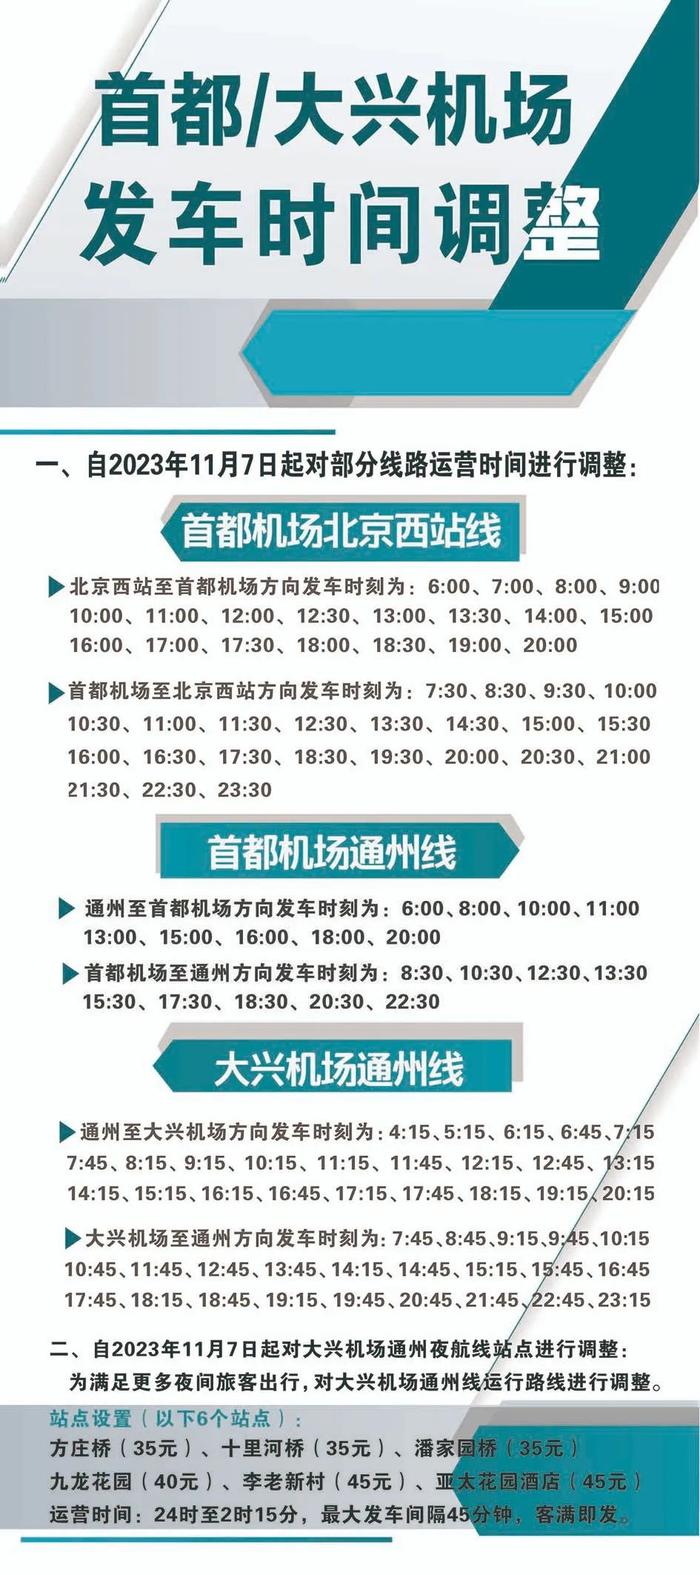 首都机场北京西站线、通州线和大兴机场通州线运营时间调整